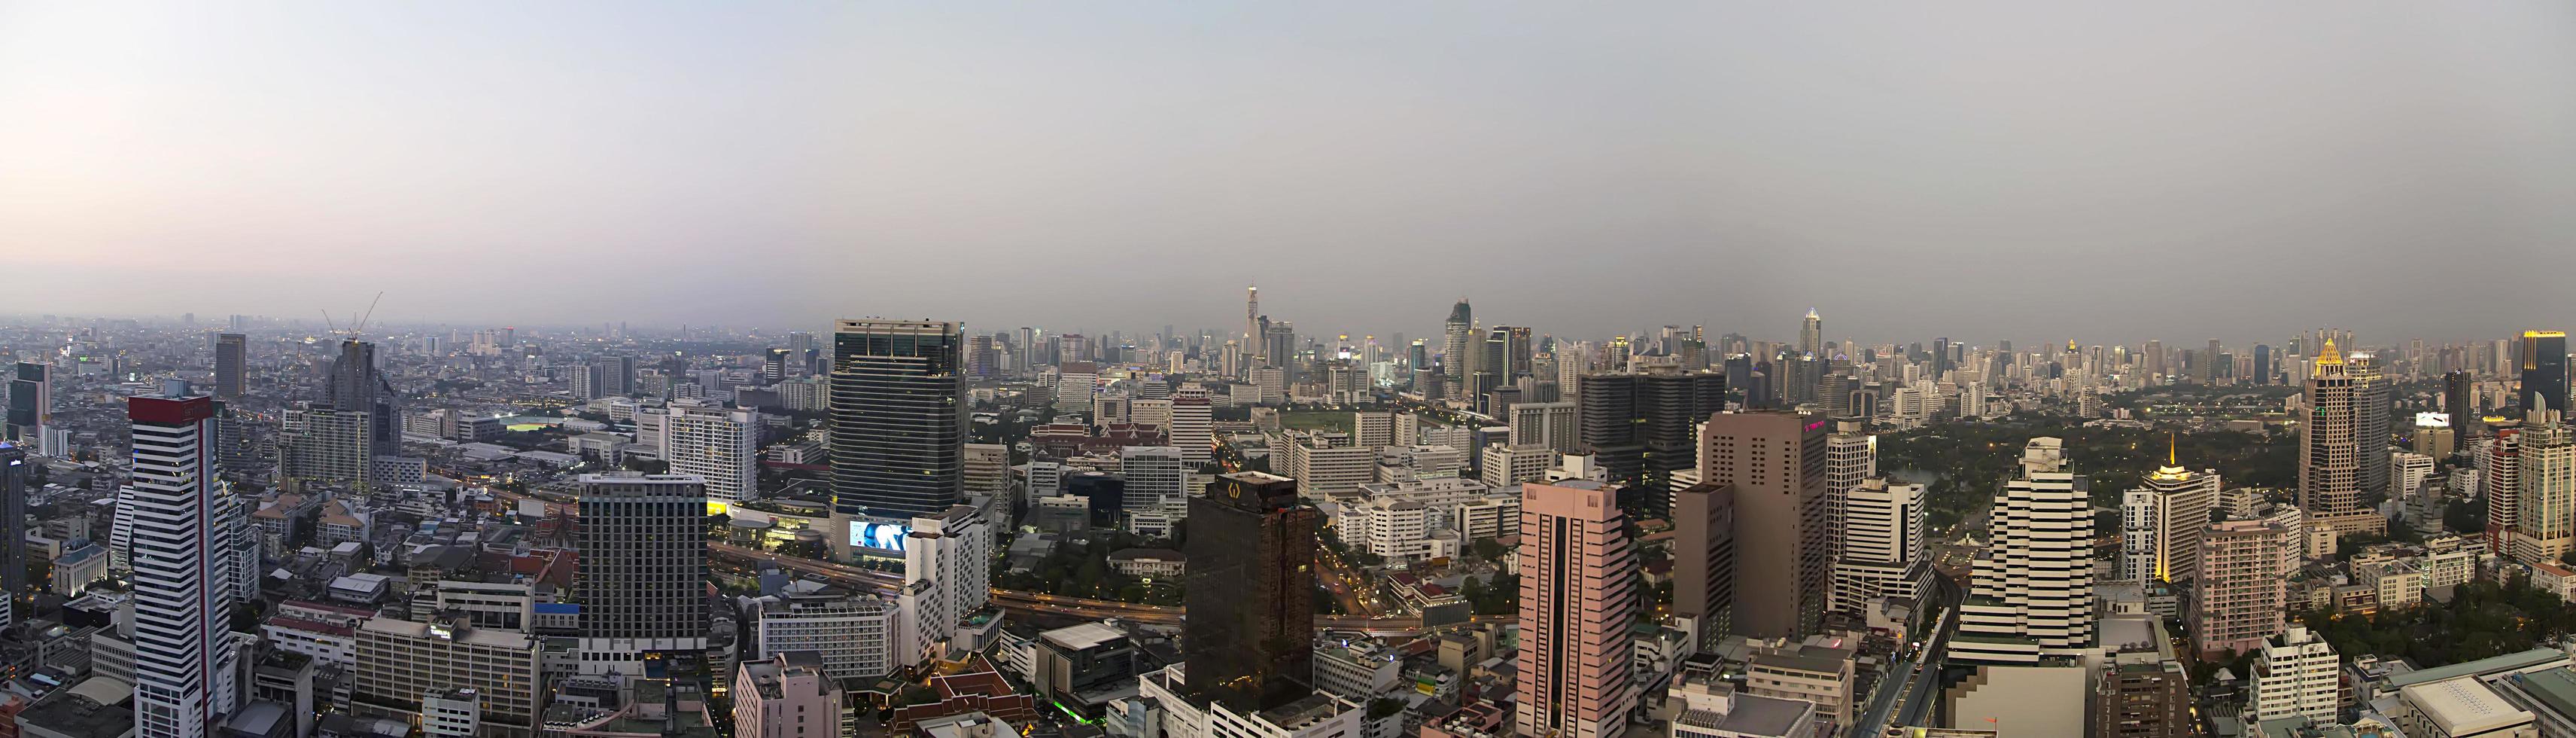 bangkok, thailandia, 2016 - vista panoramica a bangkok, thailandia. bangkok è la capitale e la città più popolosa della thailandia. foto